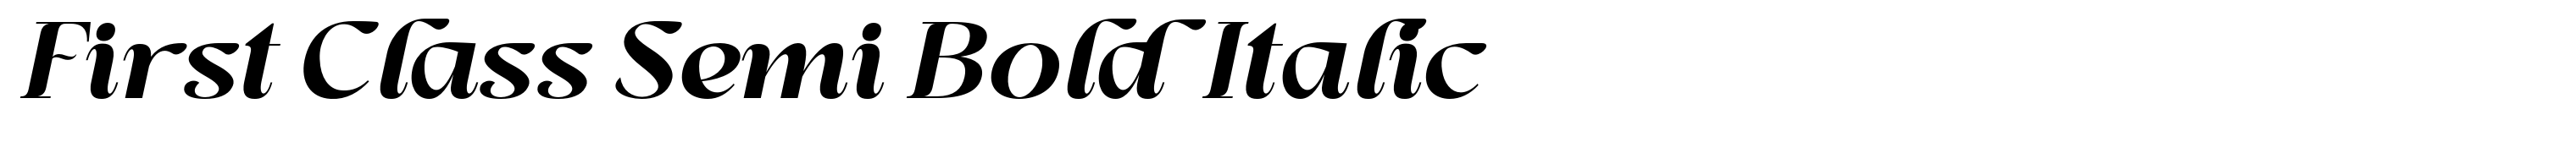 First Class Semi Bold Italic